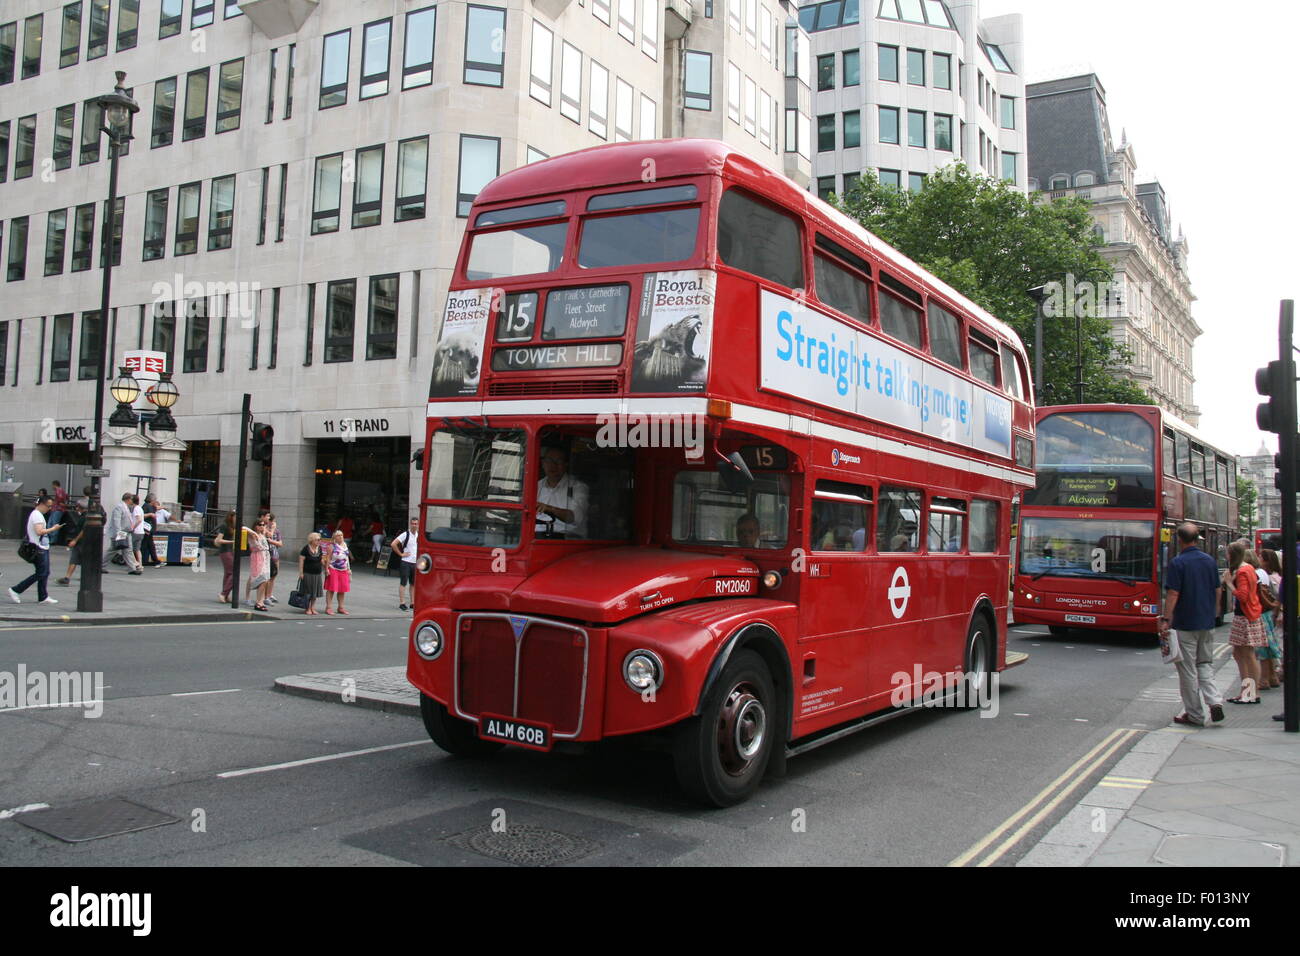 EINE ROTE VINTAGE STAGECOACH LONDON ROUTEMASTER BUS AUF DER ROUTE 15 IN LONDON Stockfoto